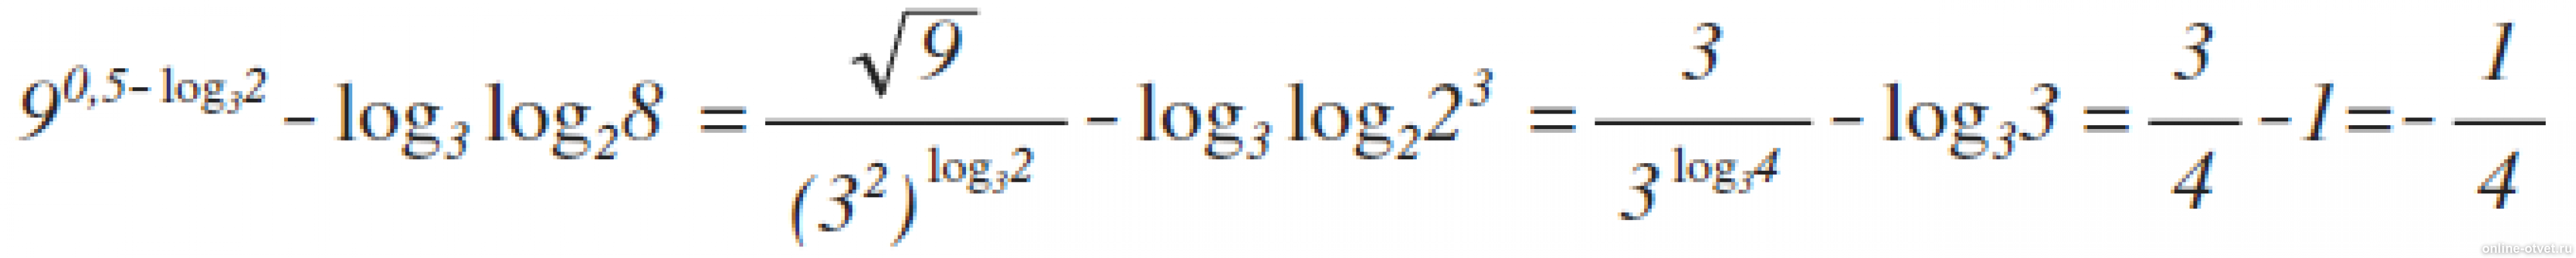 1 log 2 9x 2 5. 9 В степени 0.5 log 3 2 log3. Лог x по основанию корень из 3. Log 25 по основанию корень из 2. Log2 log2 корень 4 степени из 2.